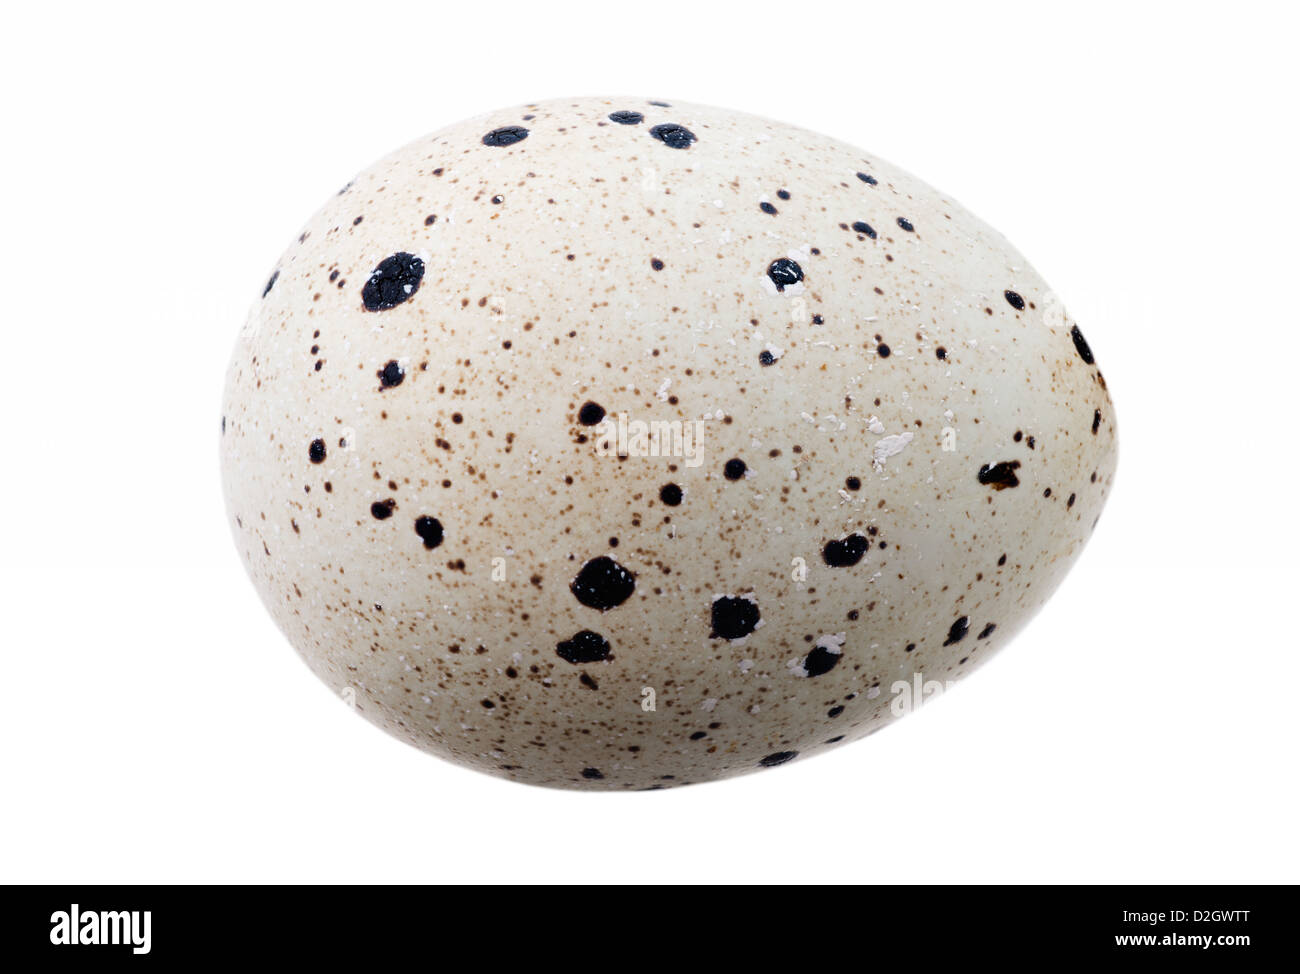 Food: single quail egg, isolated on white background Stock Photo